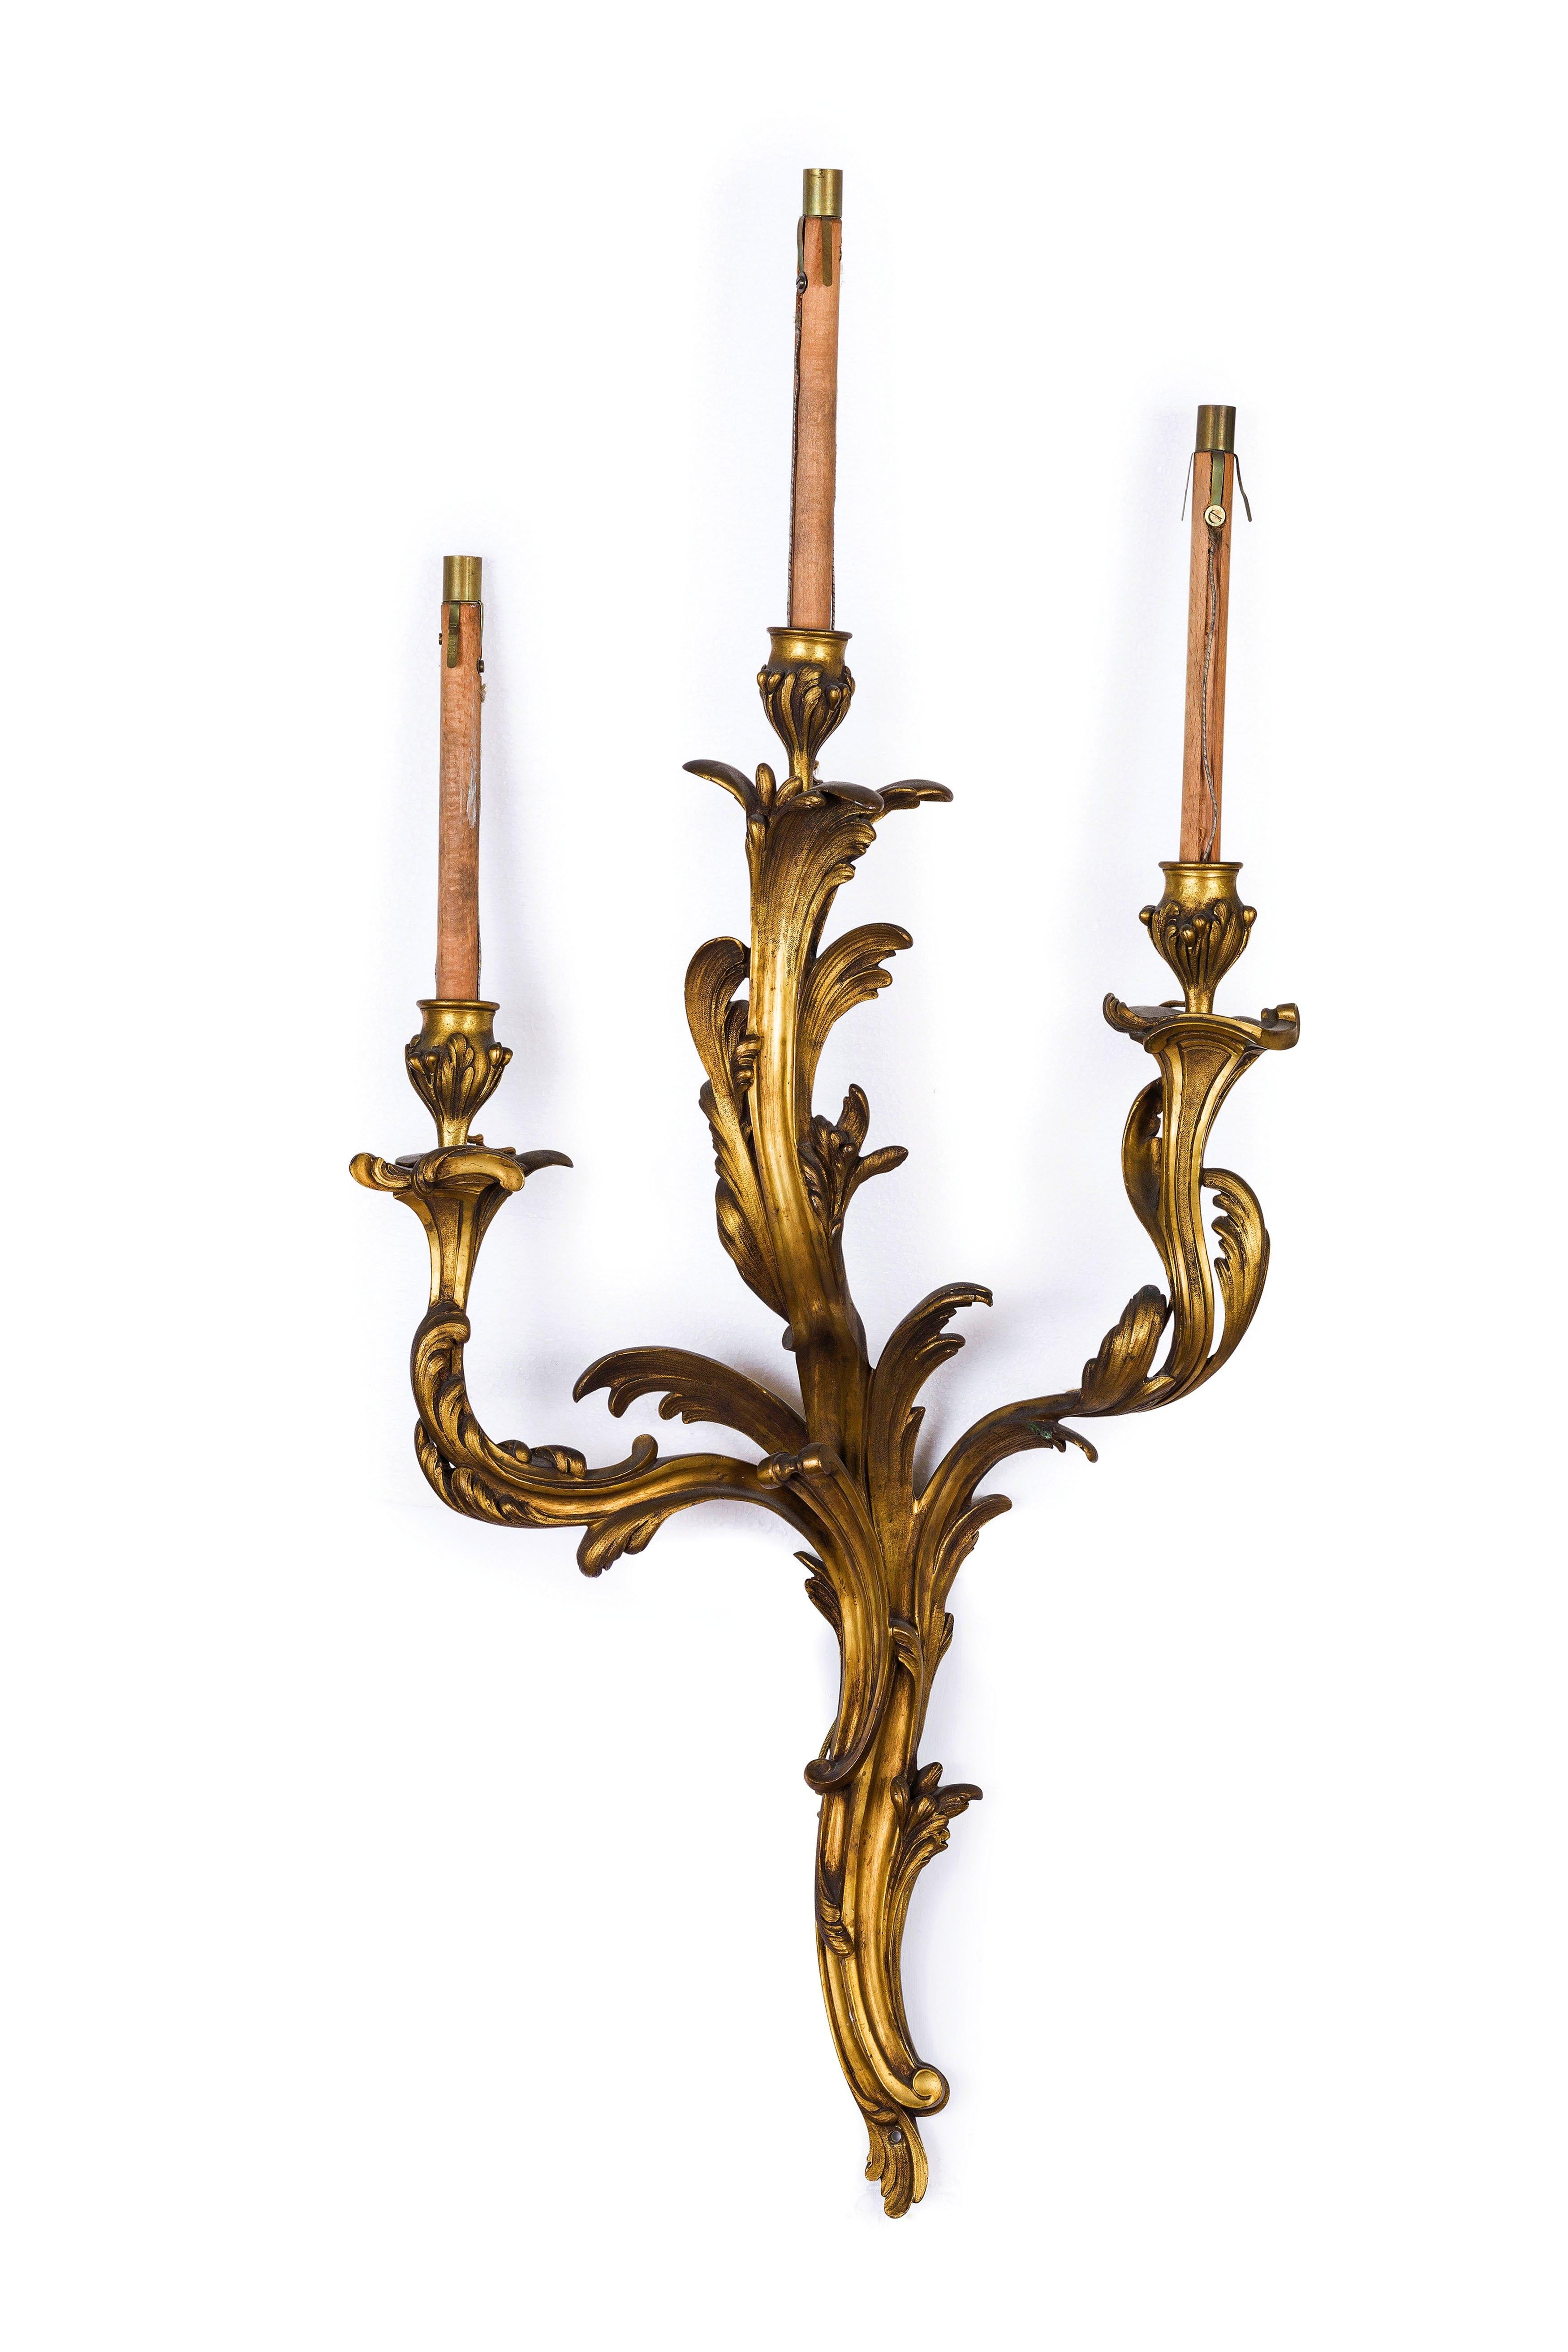 19. Jahrhundert, vier dreiflammige französische Wandleuchter aus vergoldeter Bronze

Diese vier großen dreiflammigen Wandlampen aus ziselierter vergoldeter Bronze wurden Ende des 19. Jahrhunderts in Frankreich hergestellt. Stilistisch (Rocaille)